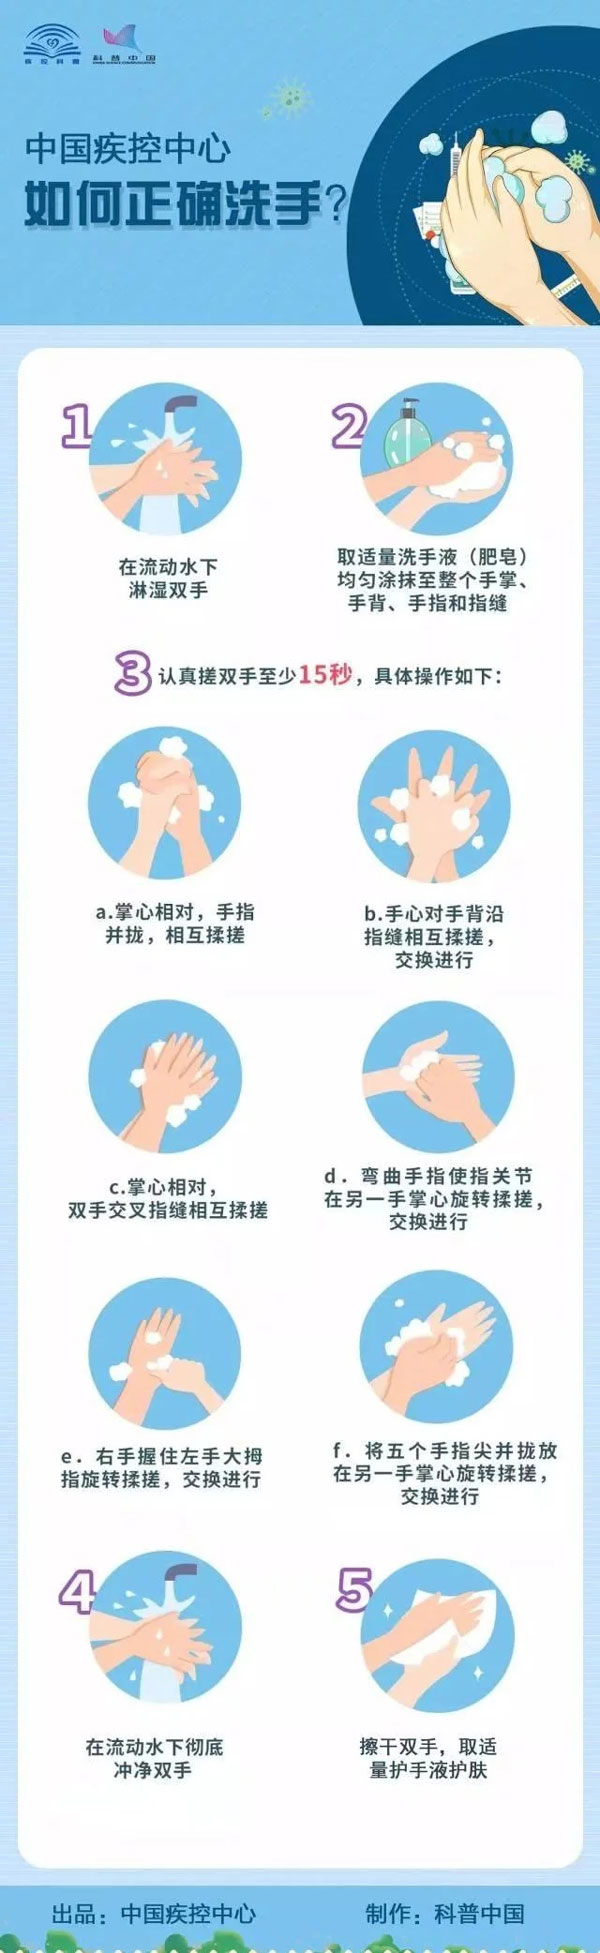 如何正确的洗手